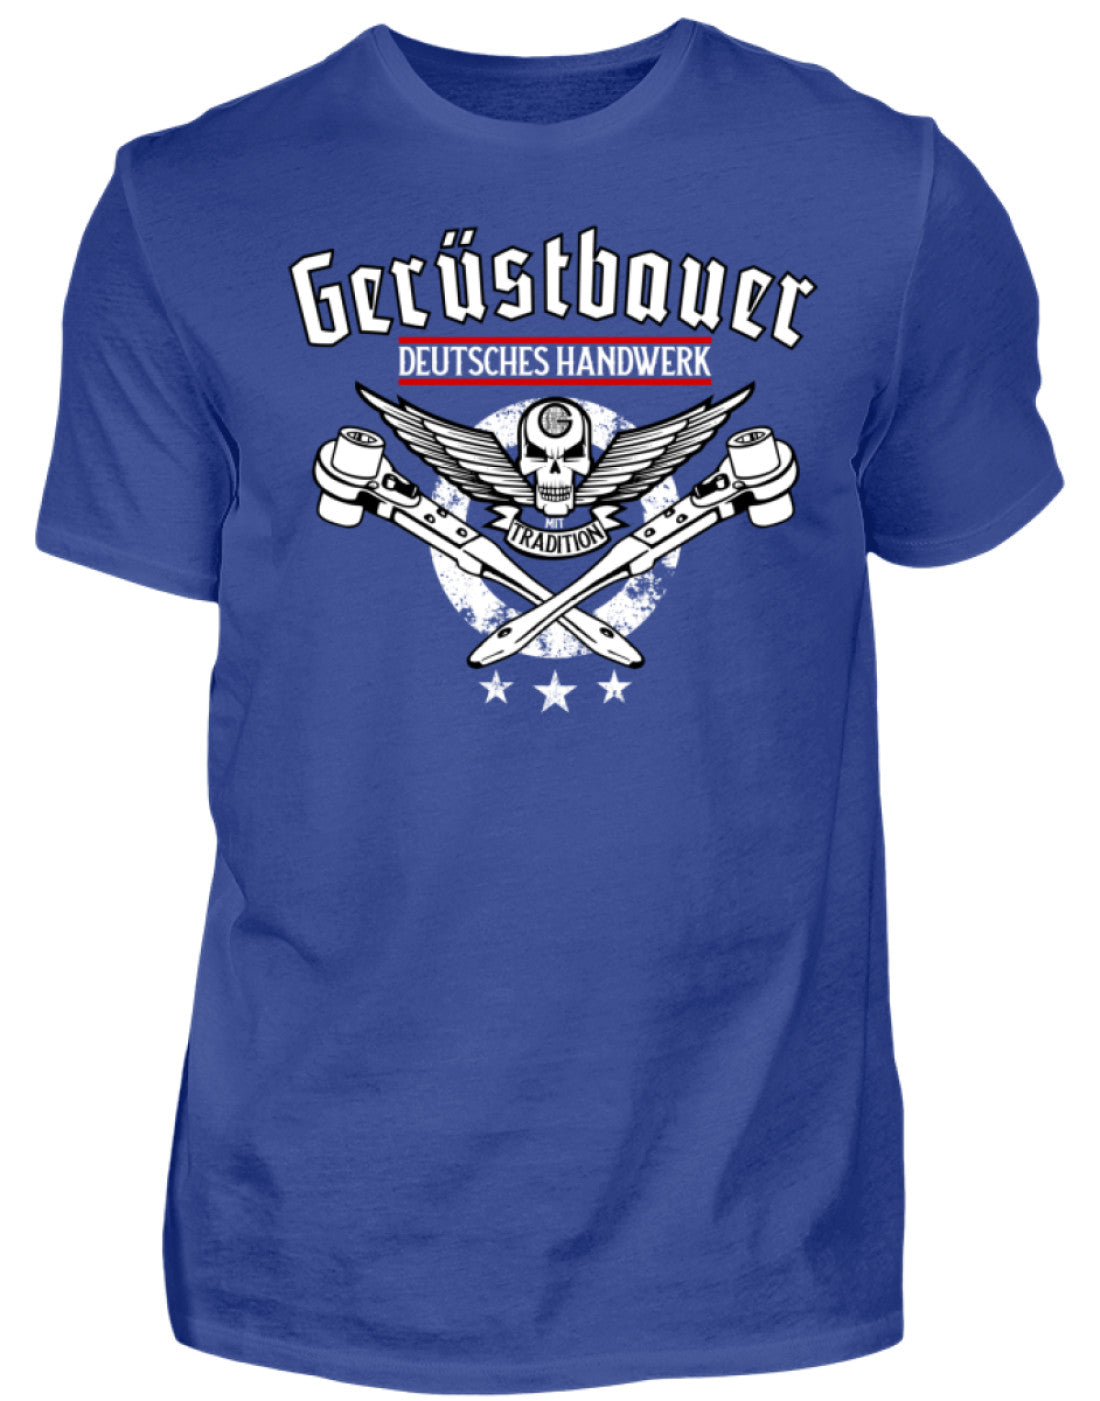 Gerüstbauer T-Shirt Handwerk mit Tradition €21.95 Gerüstbauer - Shop >>